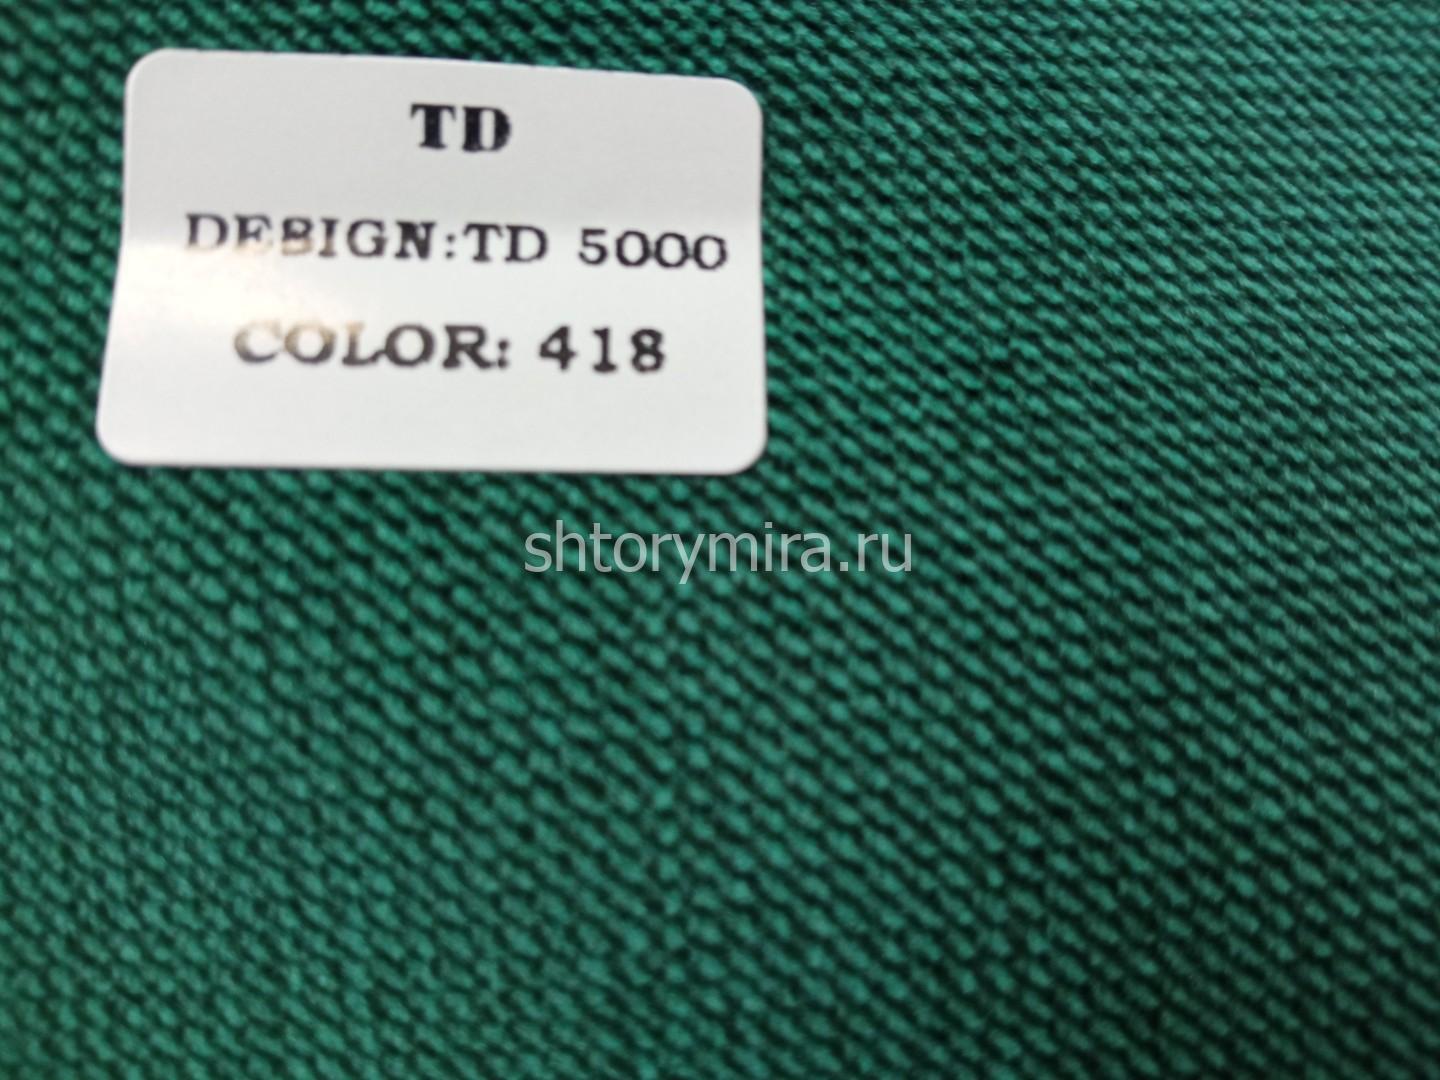 Ткань TD 5000-418 Rof